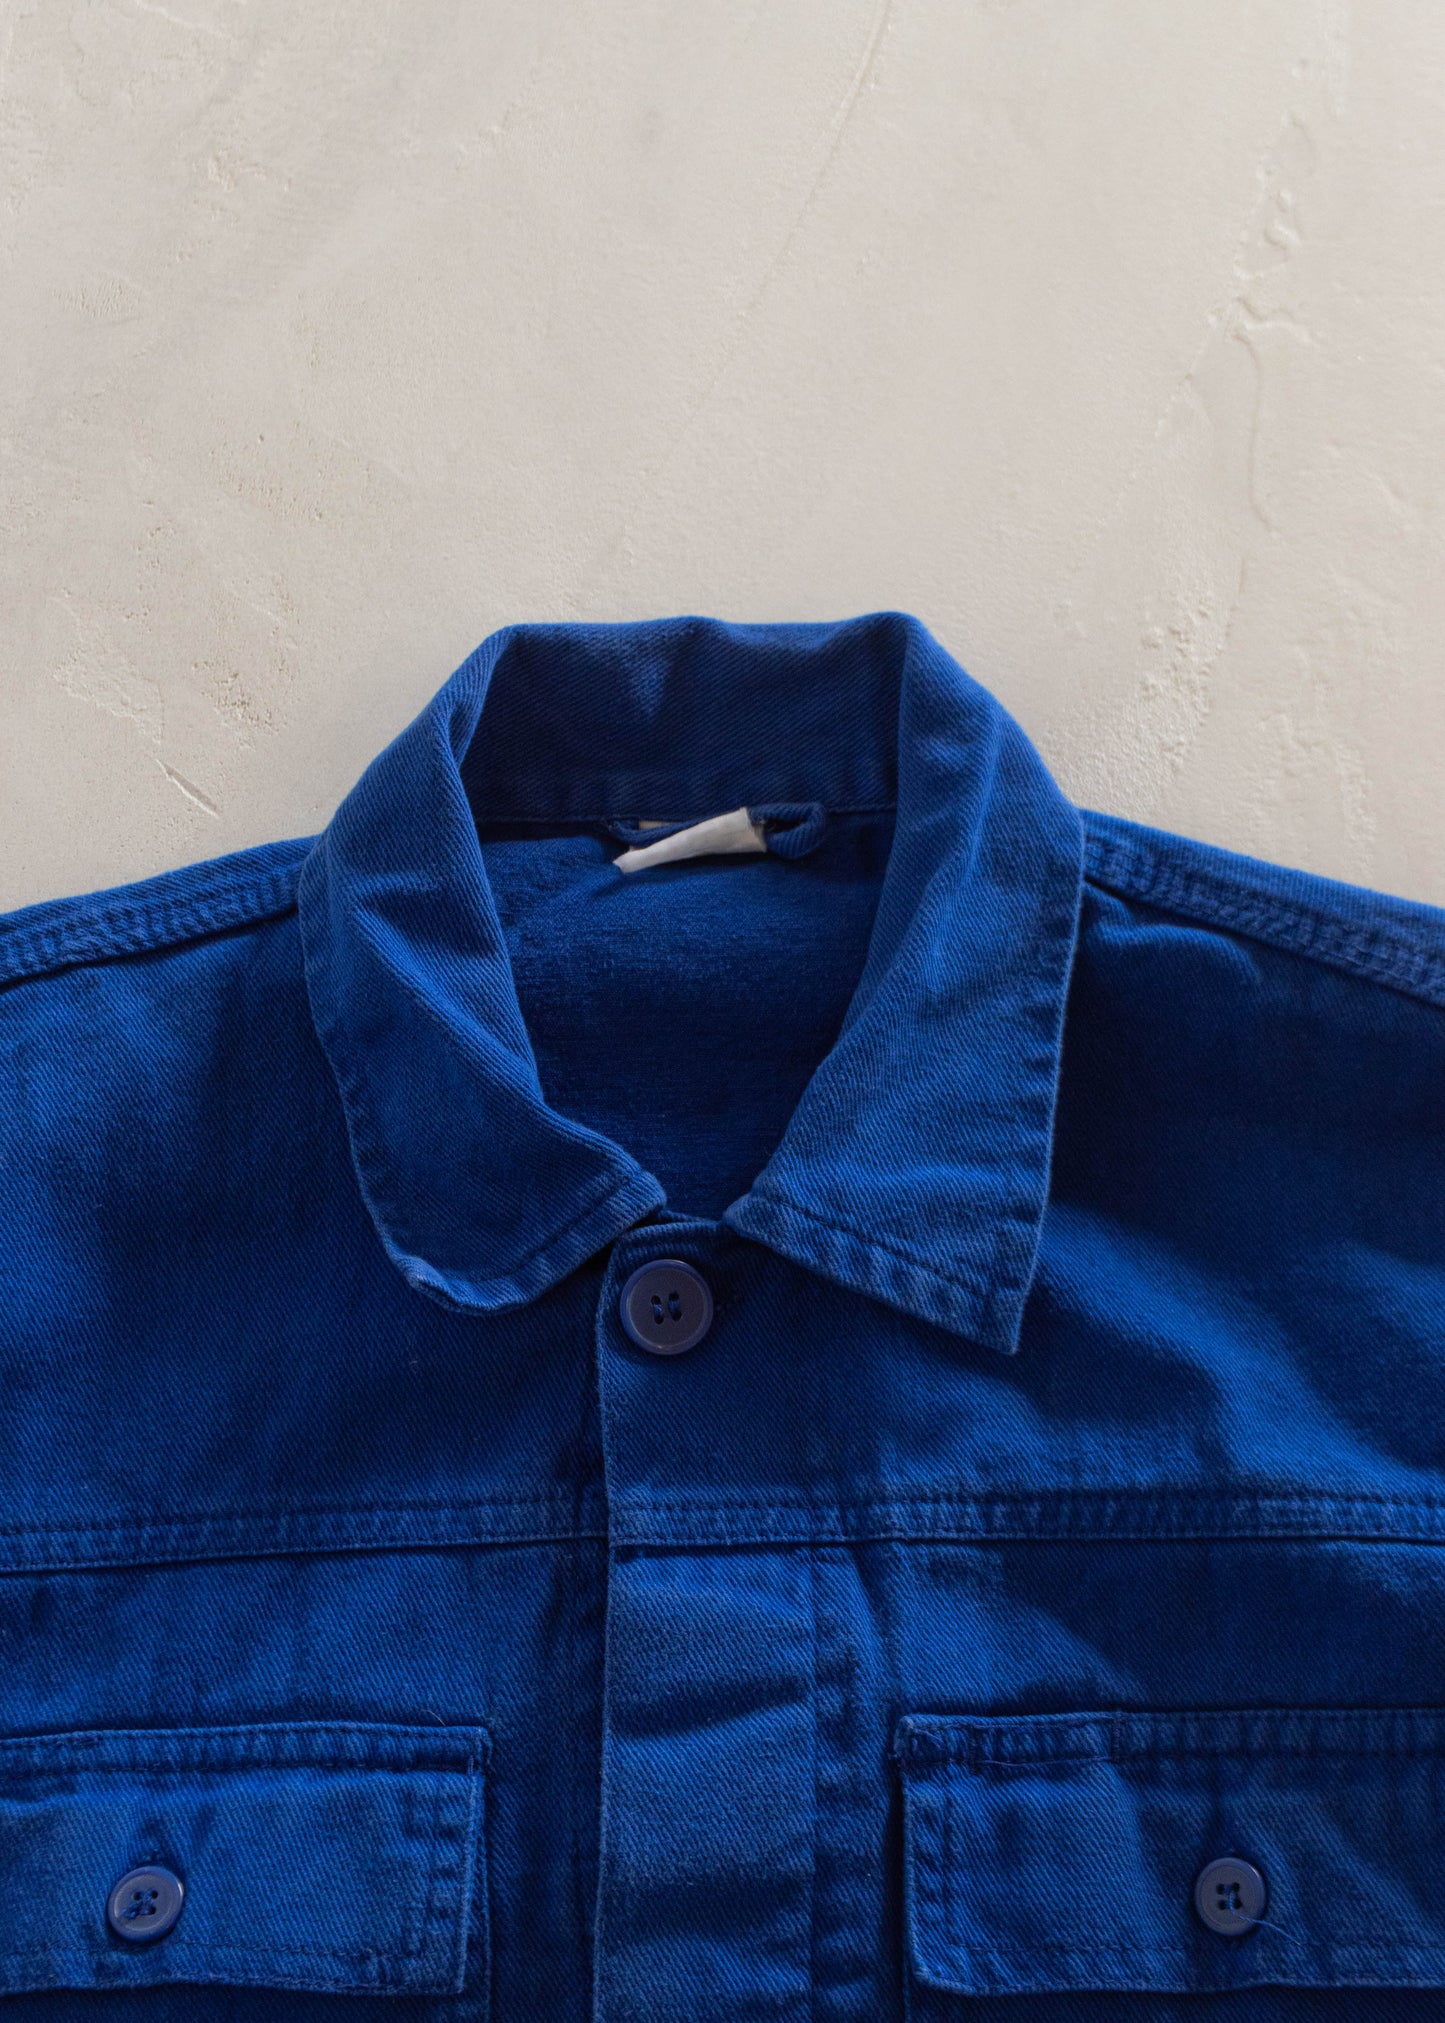 1980s French Workwear Chore Jacket Size S/M